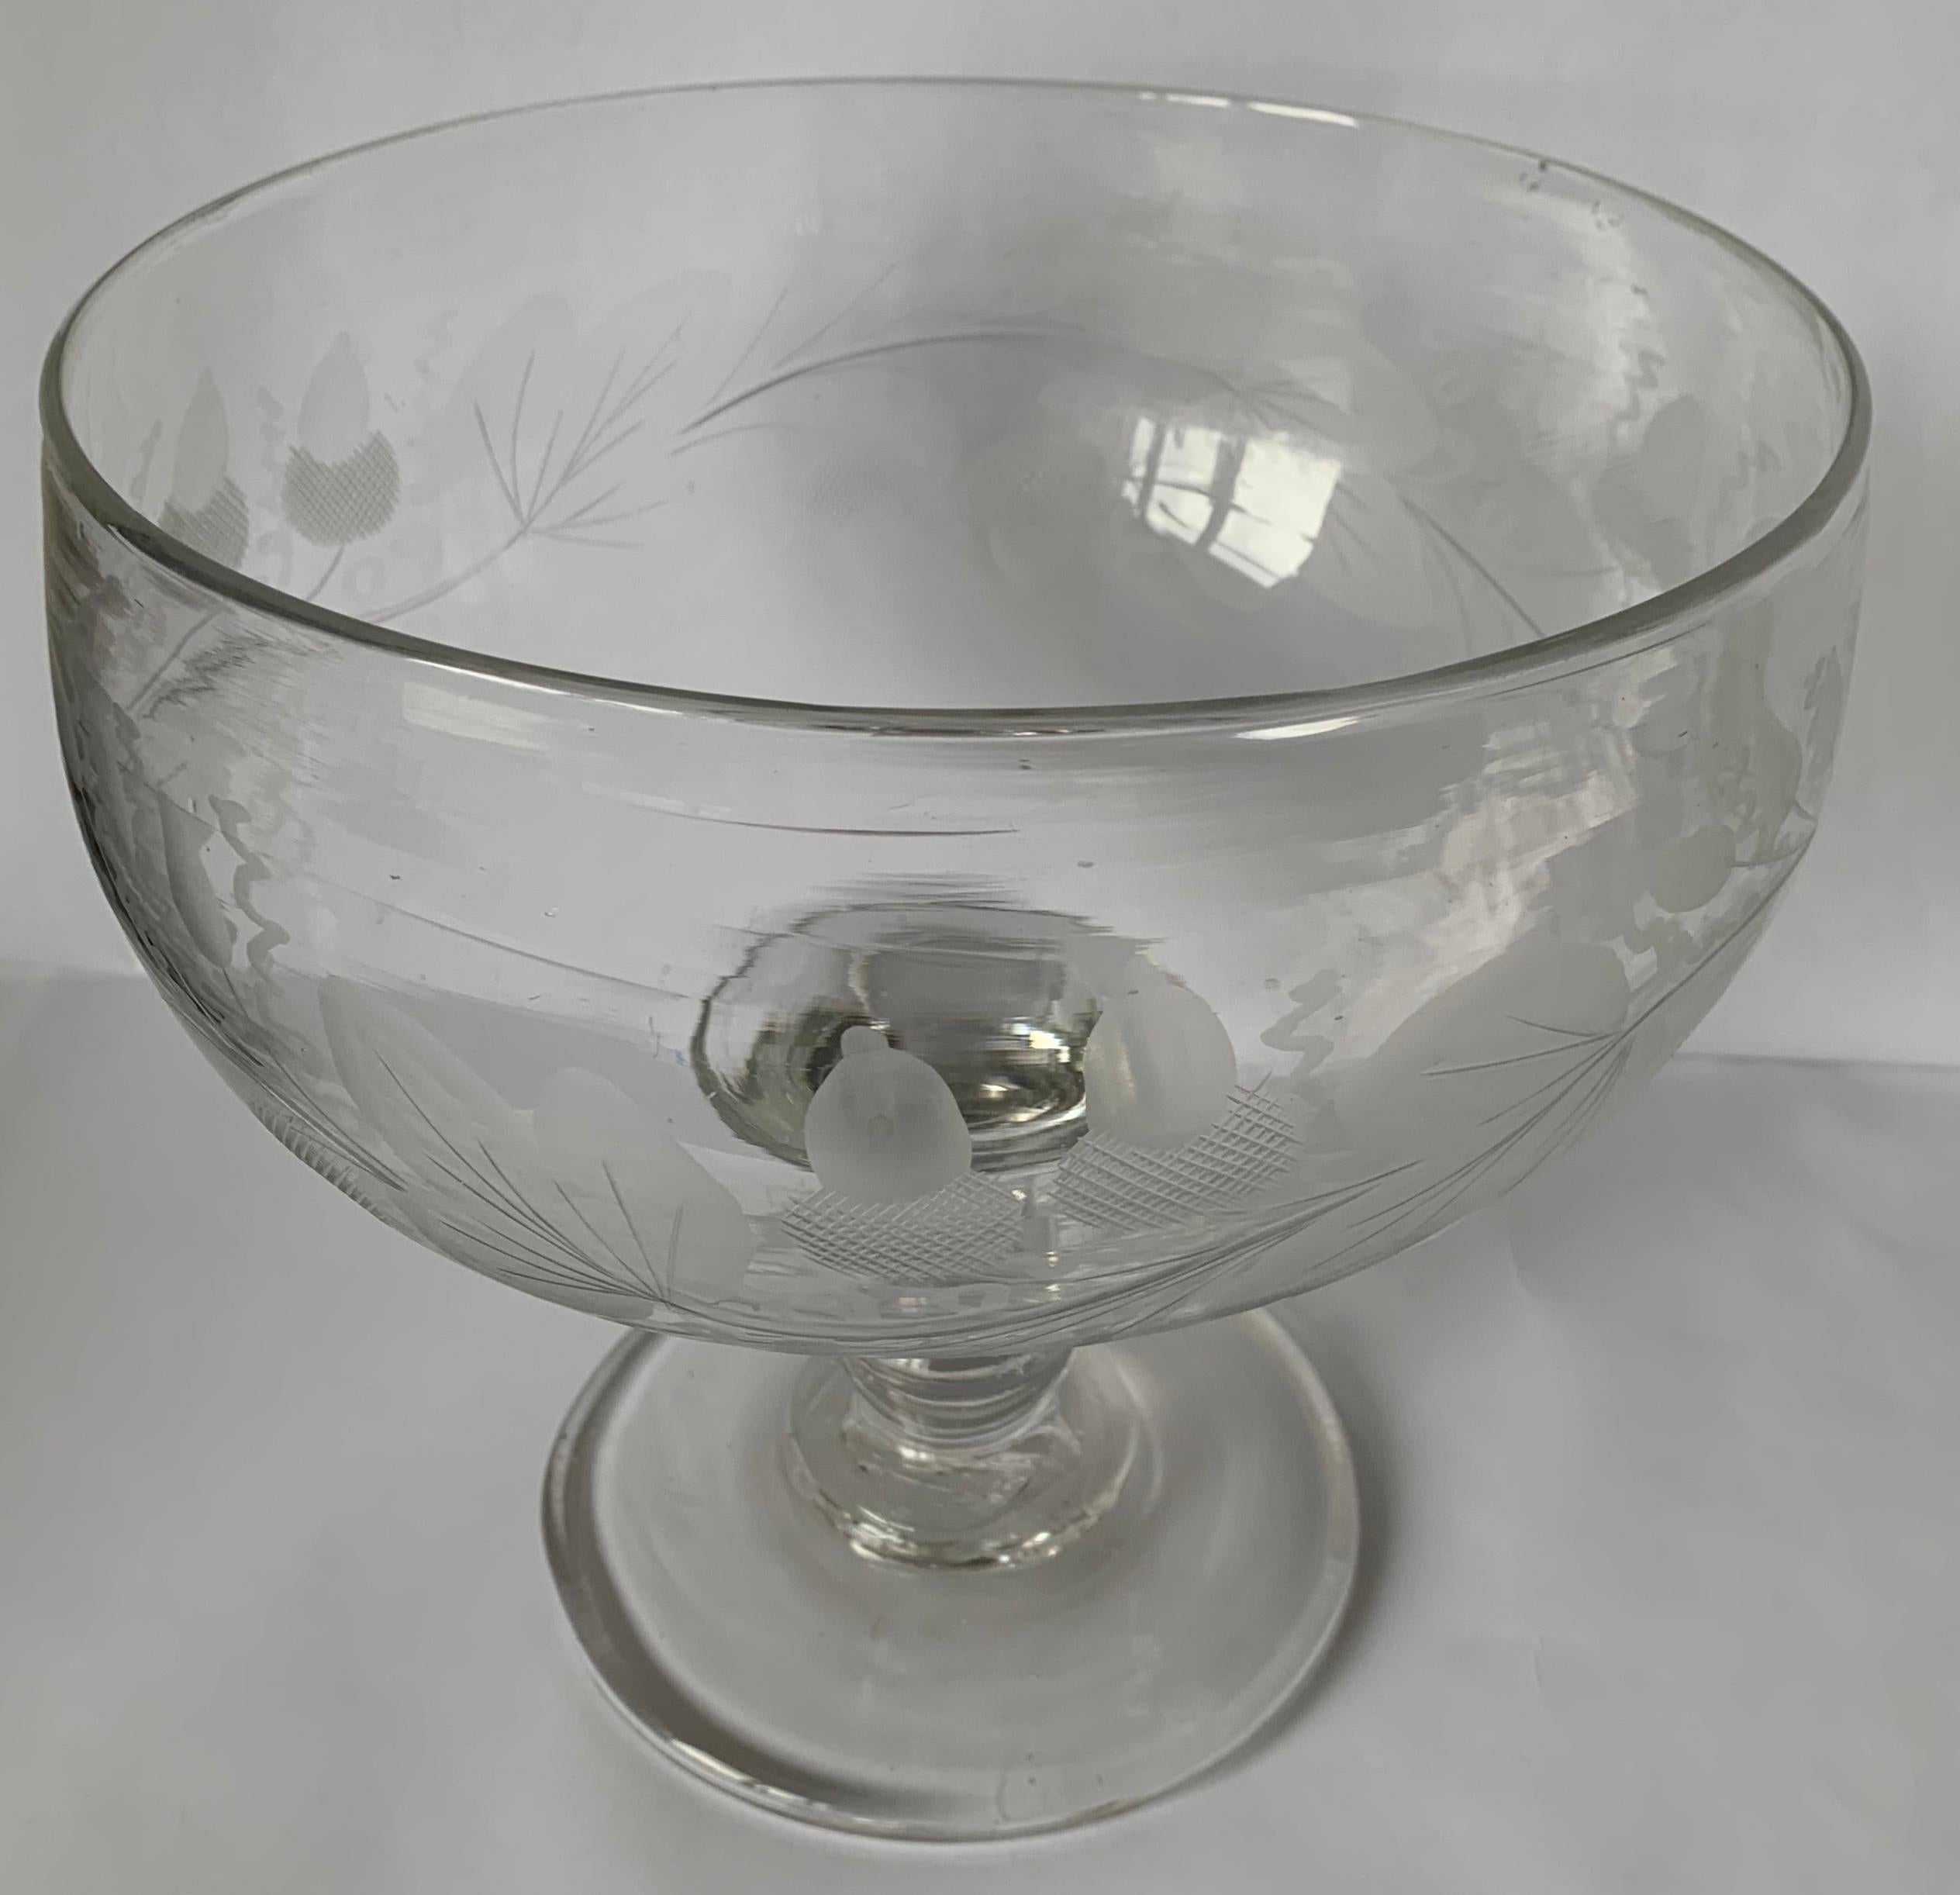 1840er Jahre Antike amerikanische gravierte Blei geblasen Glas Fuß Kompott (Geblasenes Glas)